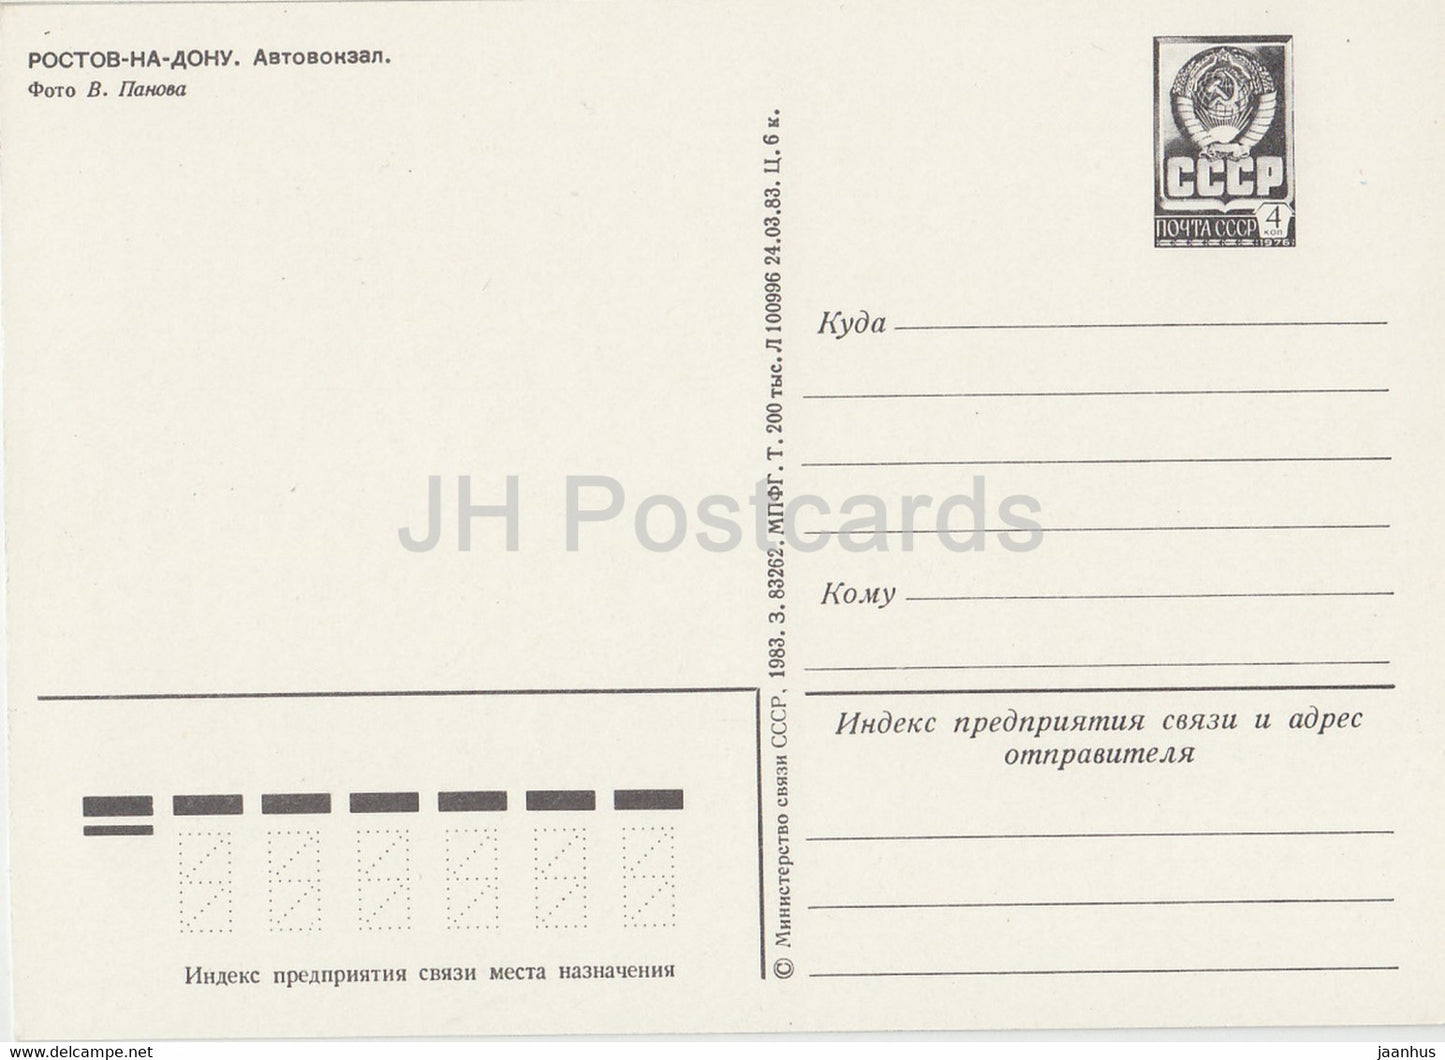 Rostov-on-Don - bus station - bus Ikarus - postal stationery - 1983 - Russia USSR - unused